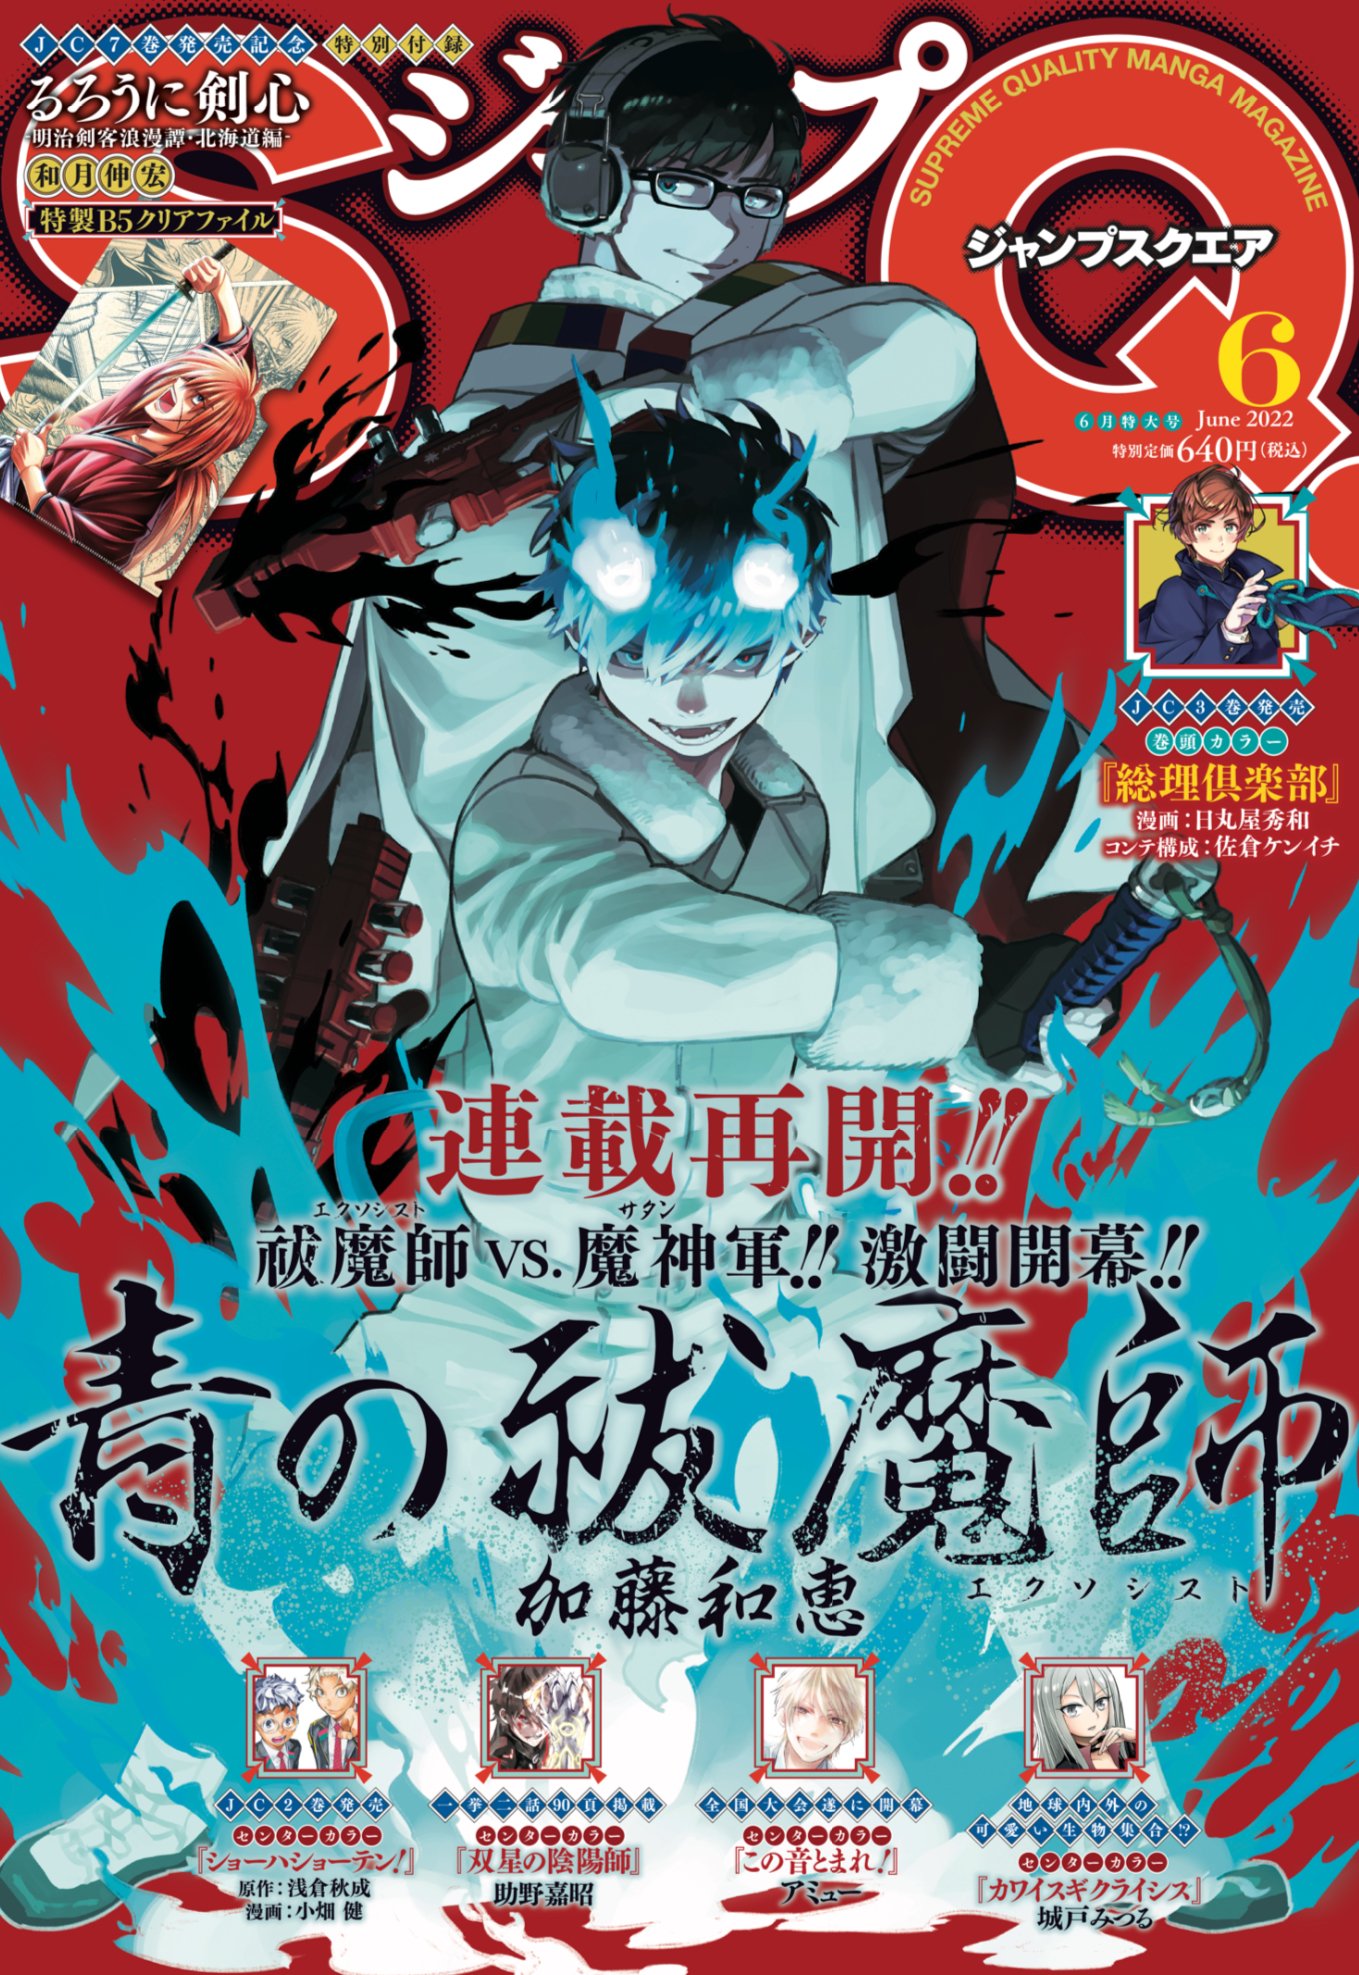 Rin Okumura (edit) | Blue exorcist anime, Exorcist anime, Blue exorcist